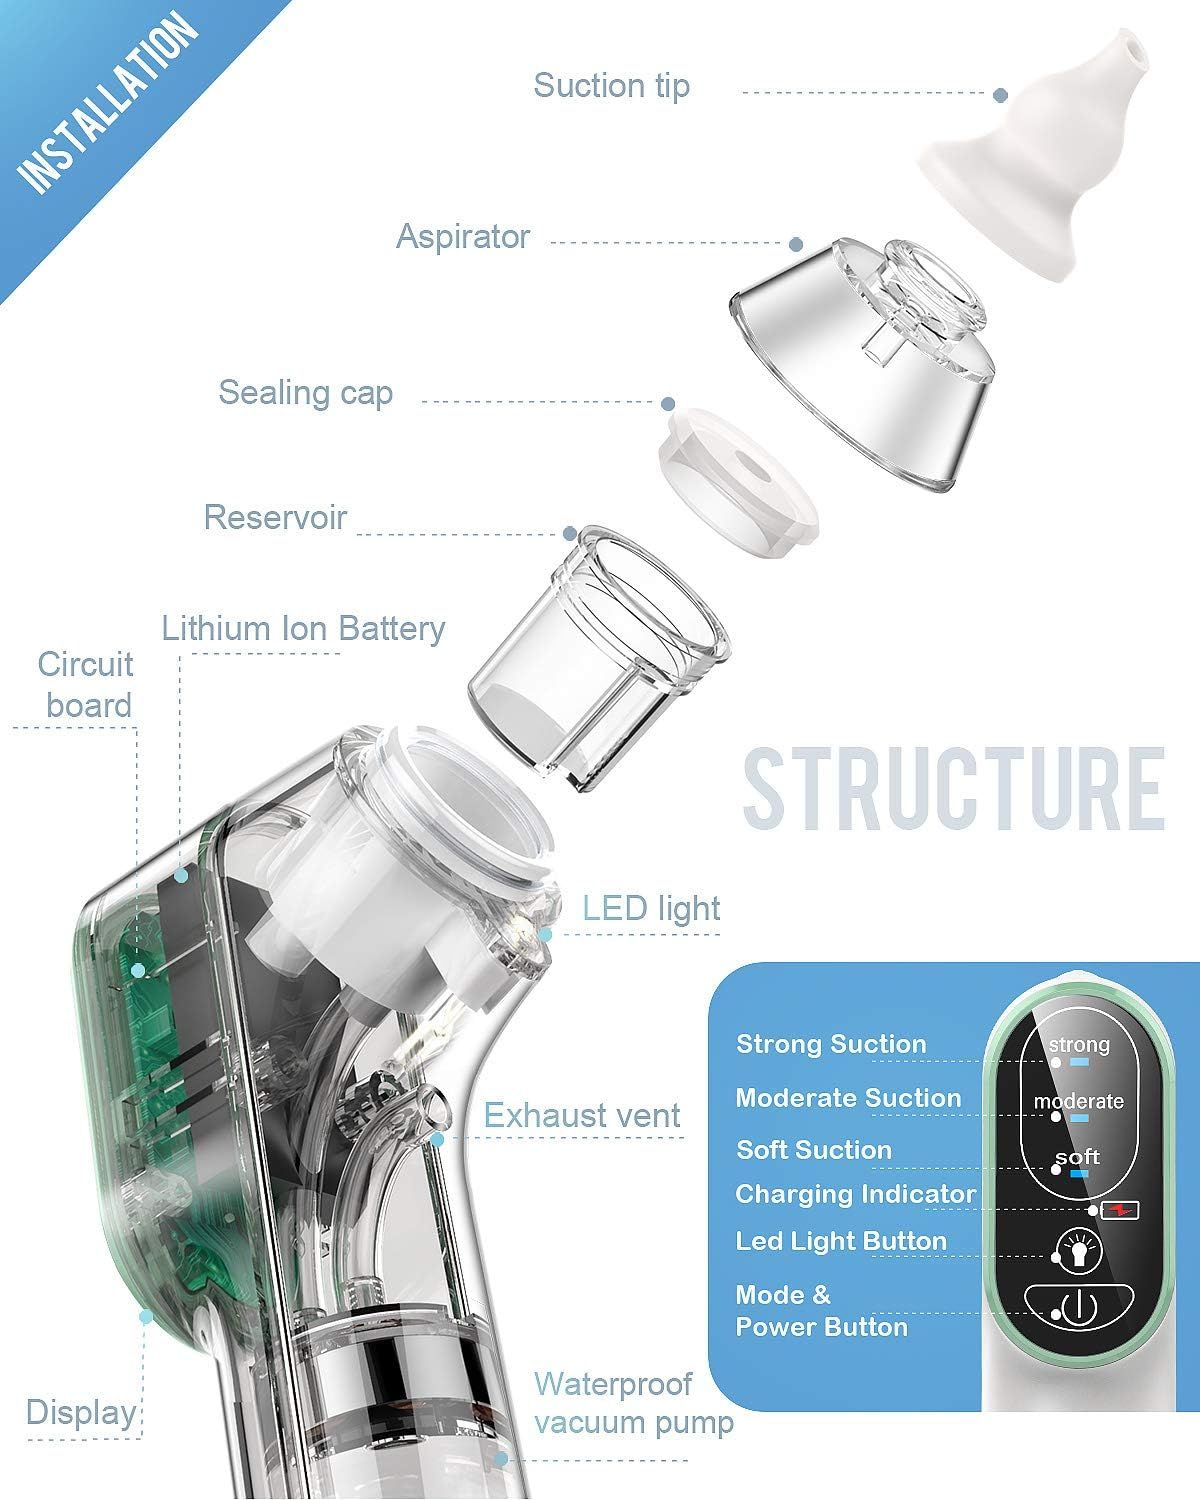 DynaBliss Nasensauger Baby Elektrisch Nasensaug Baby Staubsaug USB Aufladen Medizinisches Silikon